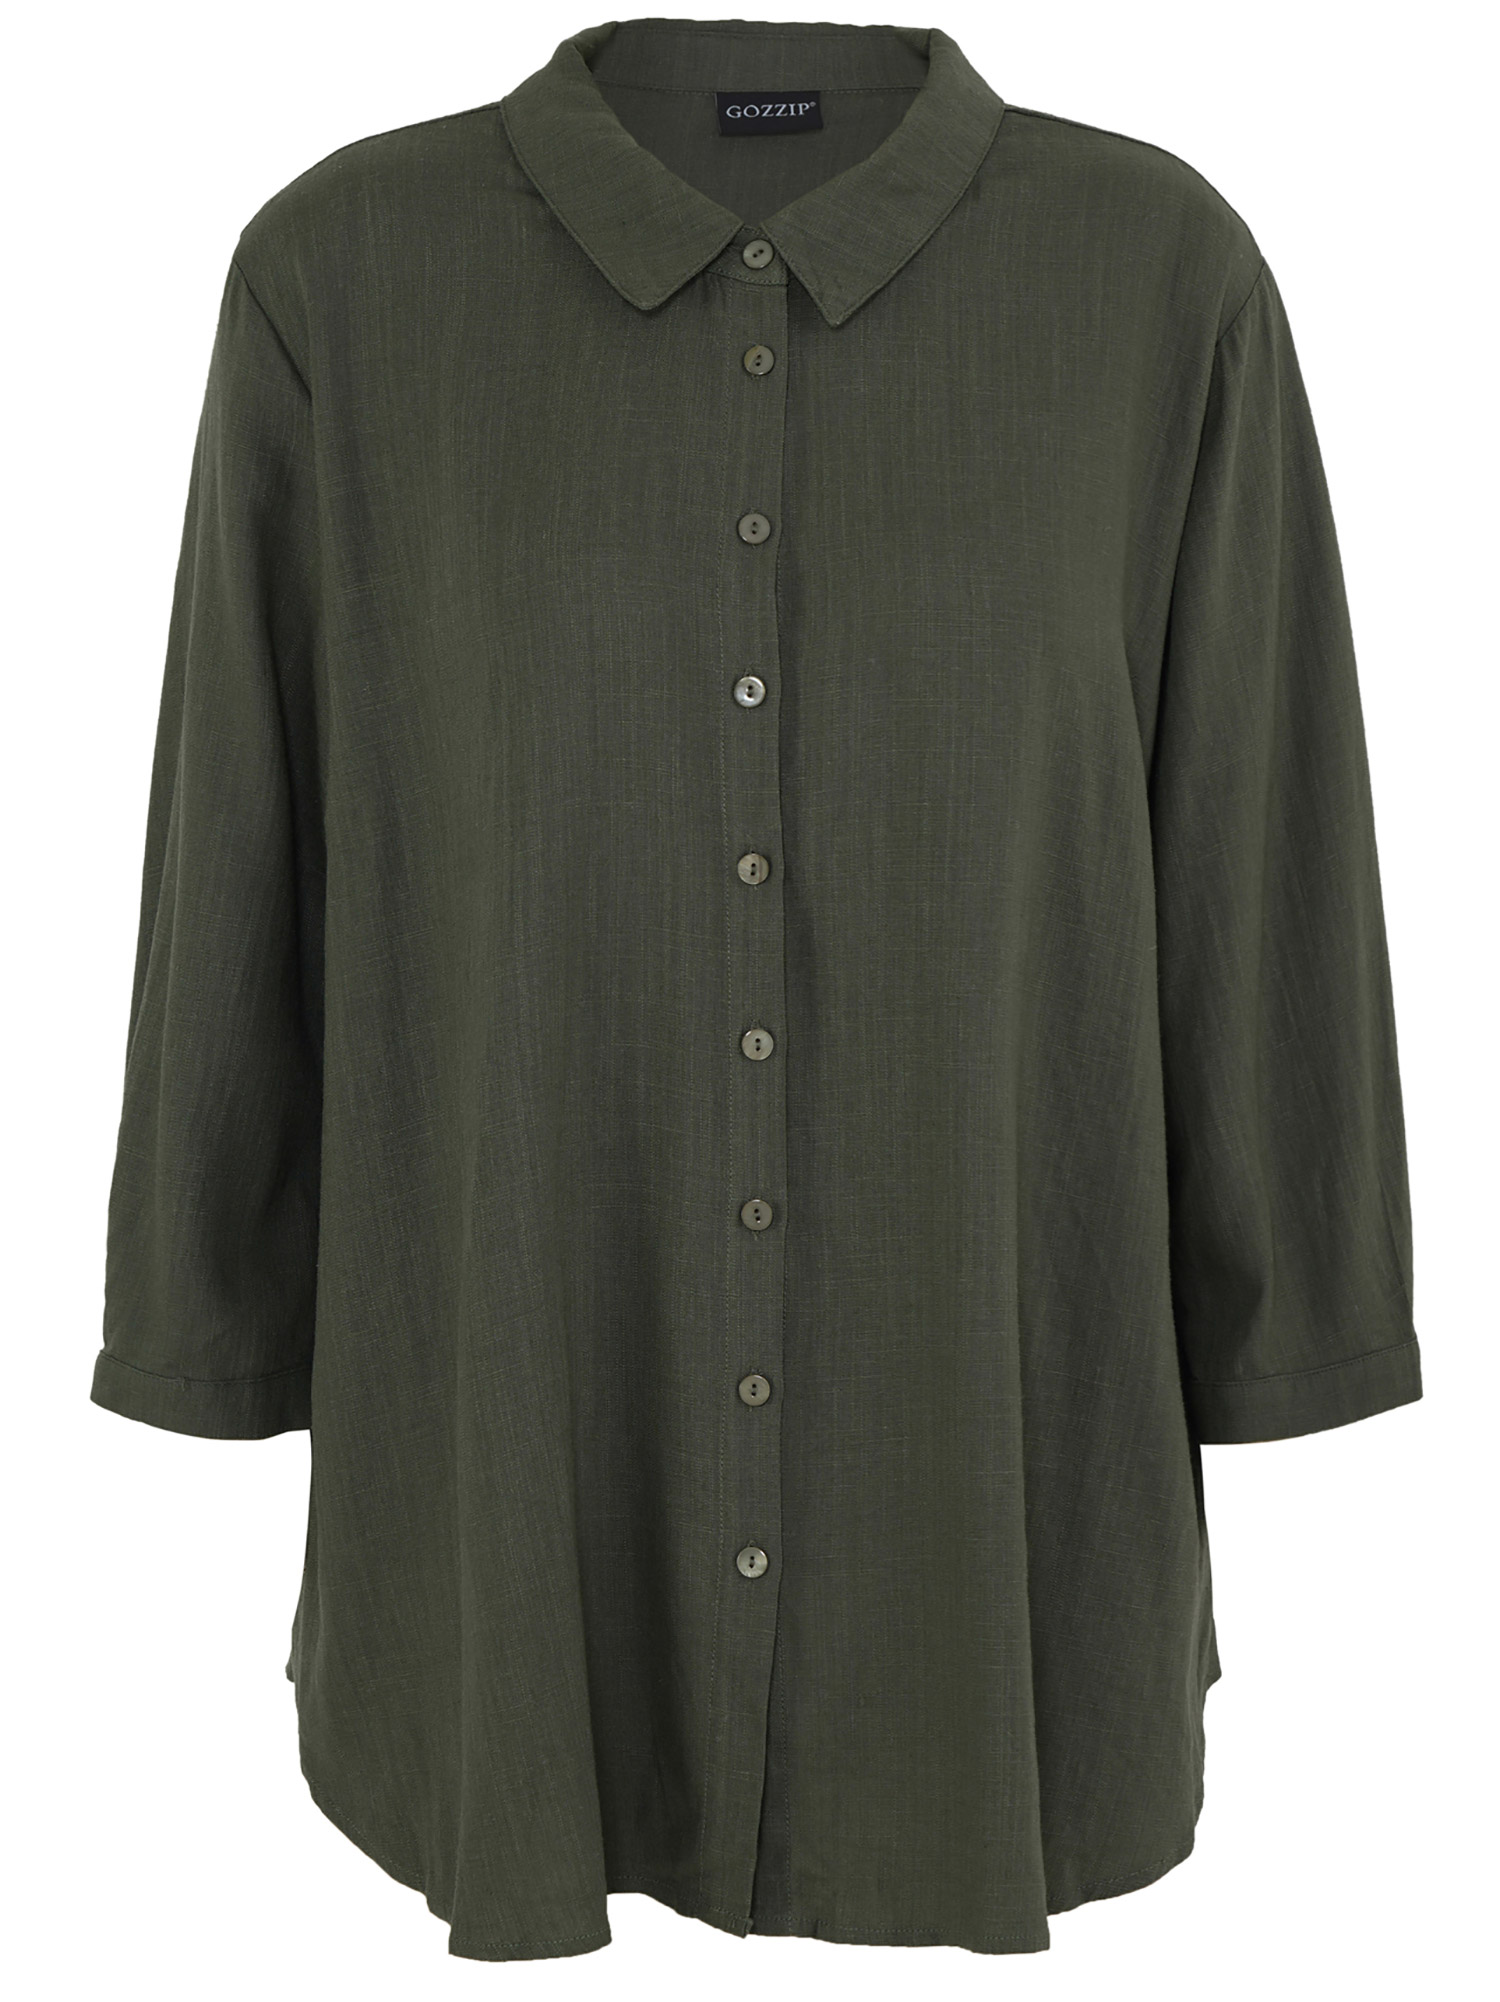 KARINA - grønn skjorte i en eksklusiv viskose/lin kvalitet fra Gozzip